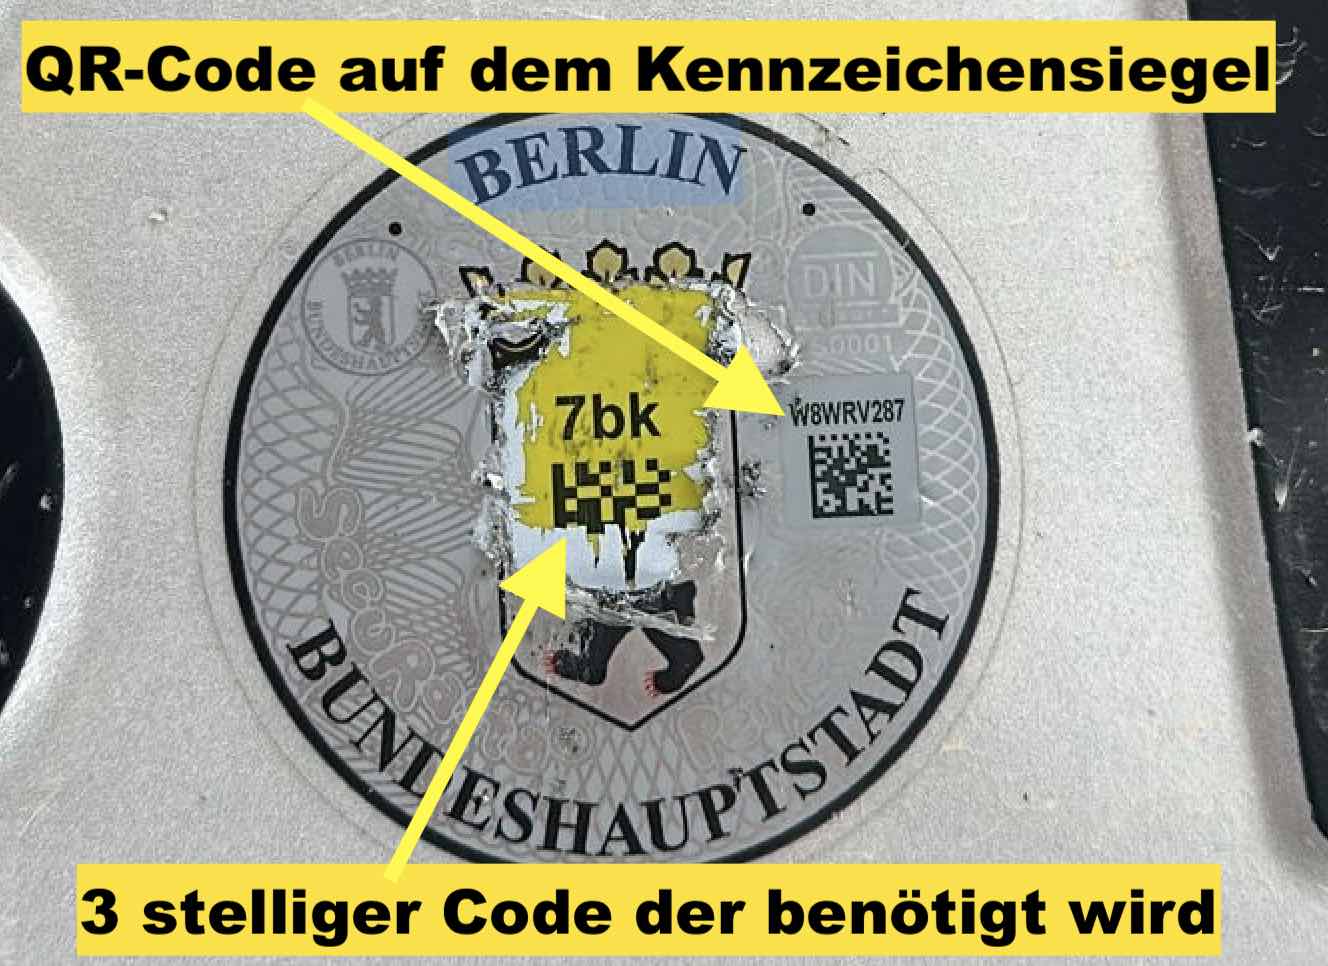 Musterbild eines Kennzeichenwappens mit QR-Code aus Berlin